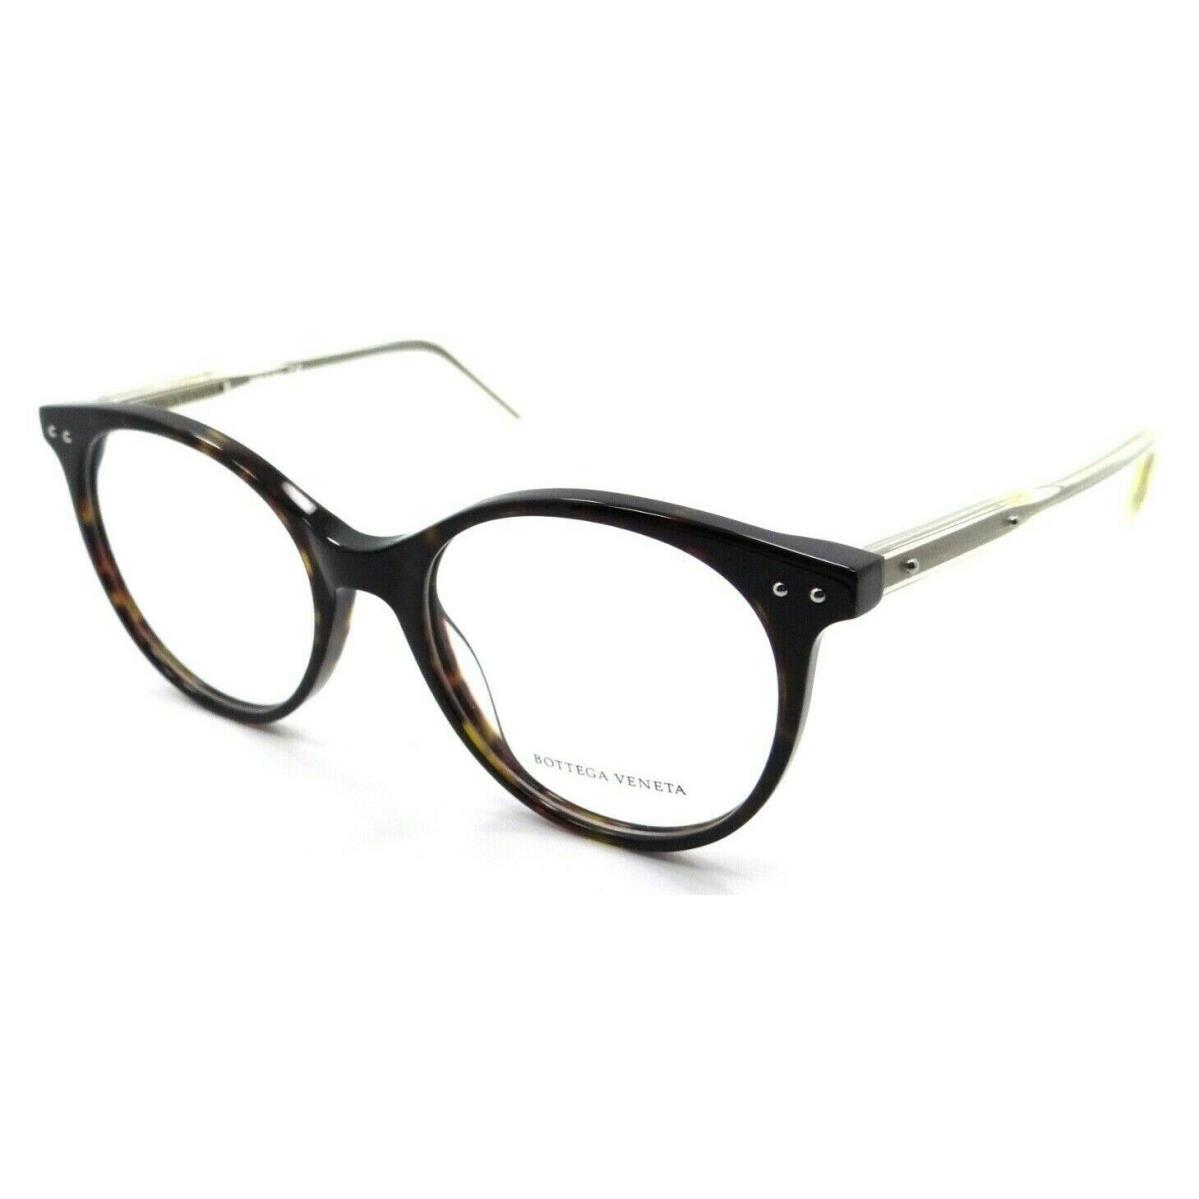 Bottega Veneta Eyeglasses Frames BV0081O 002 52-18-145 Havana / Yellow Italy